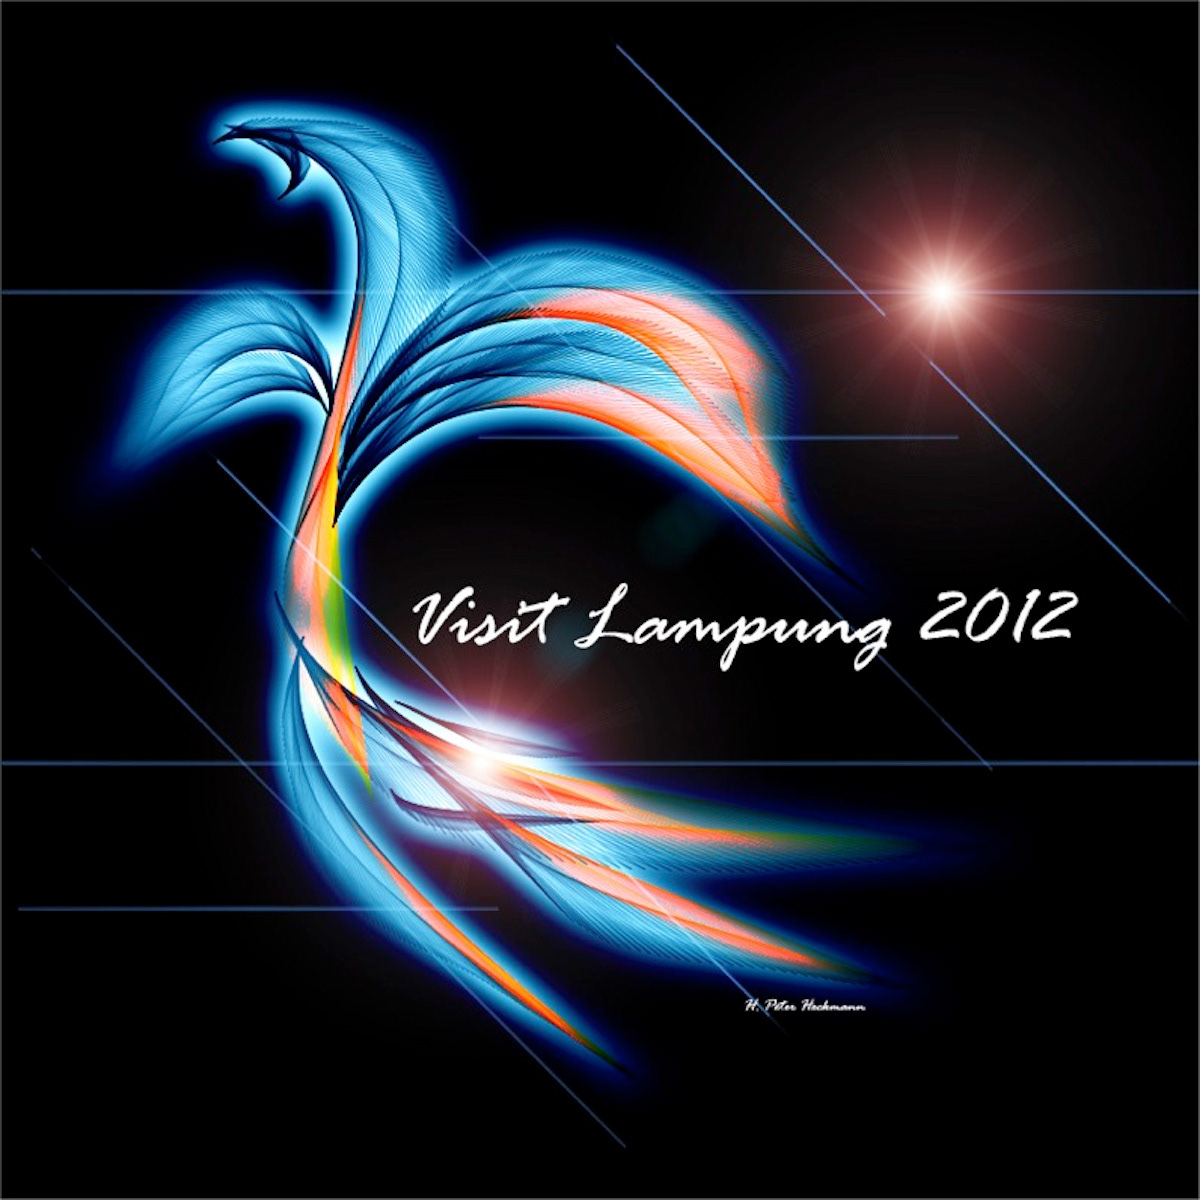 Lampung indonesia sumatra tourism ILLUSTRATION  poster branding  digital Drawing 